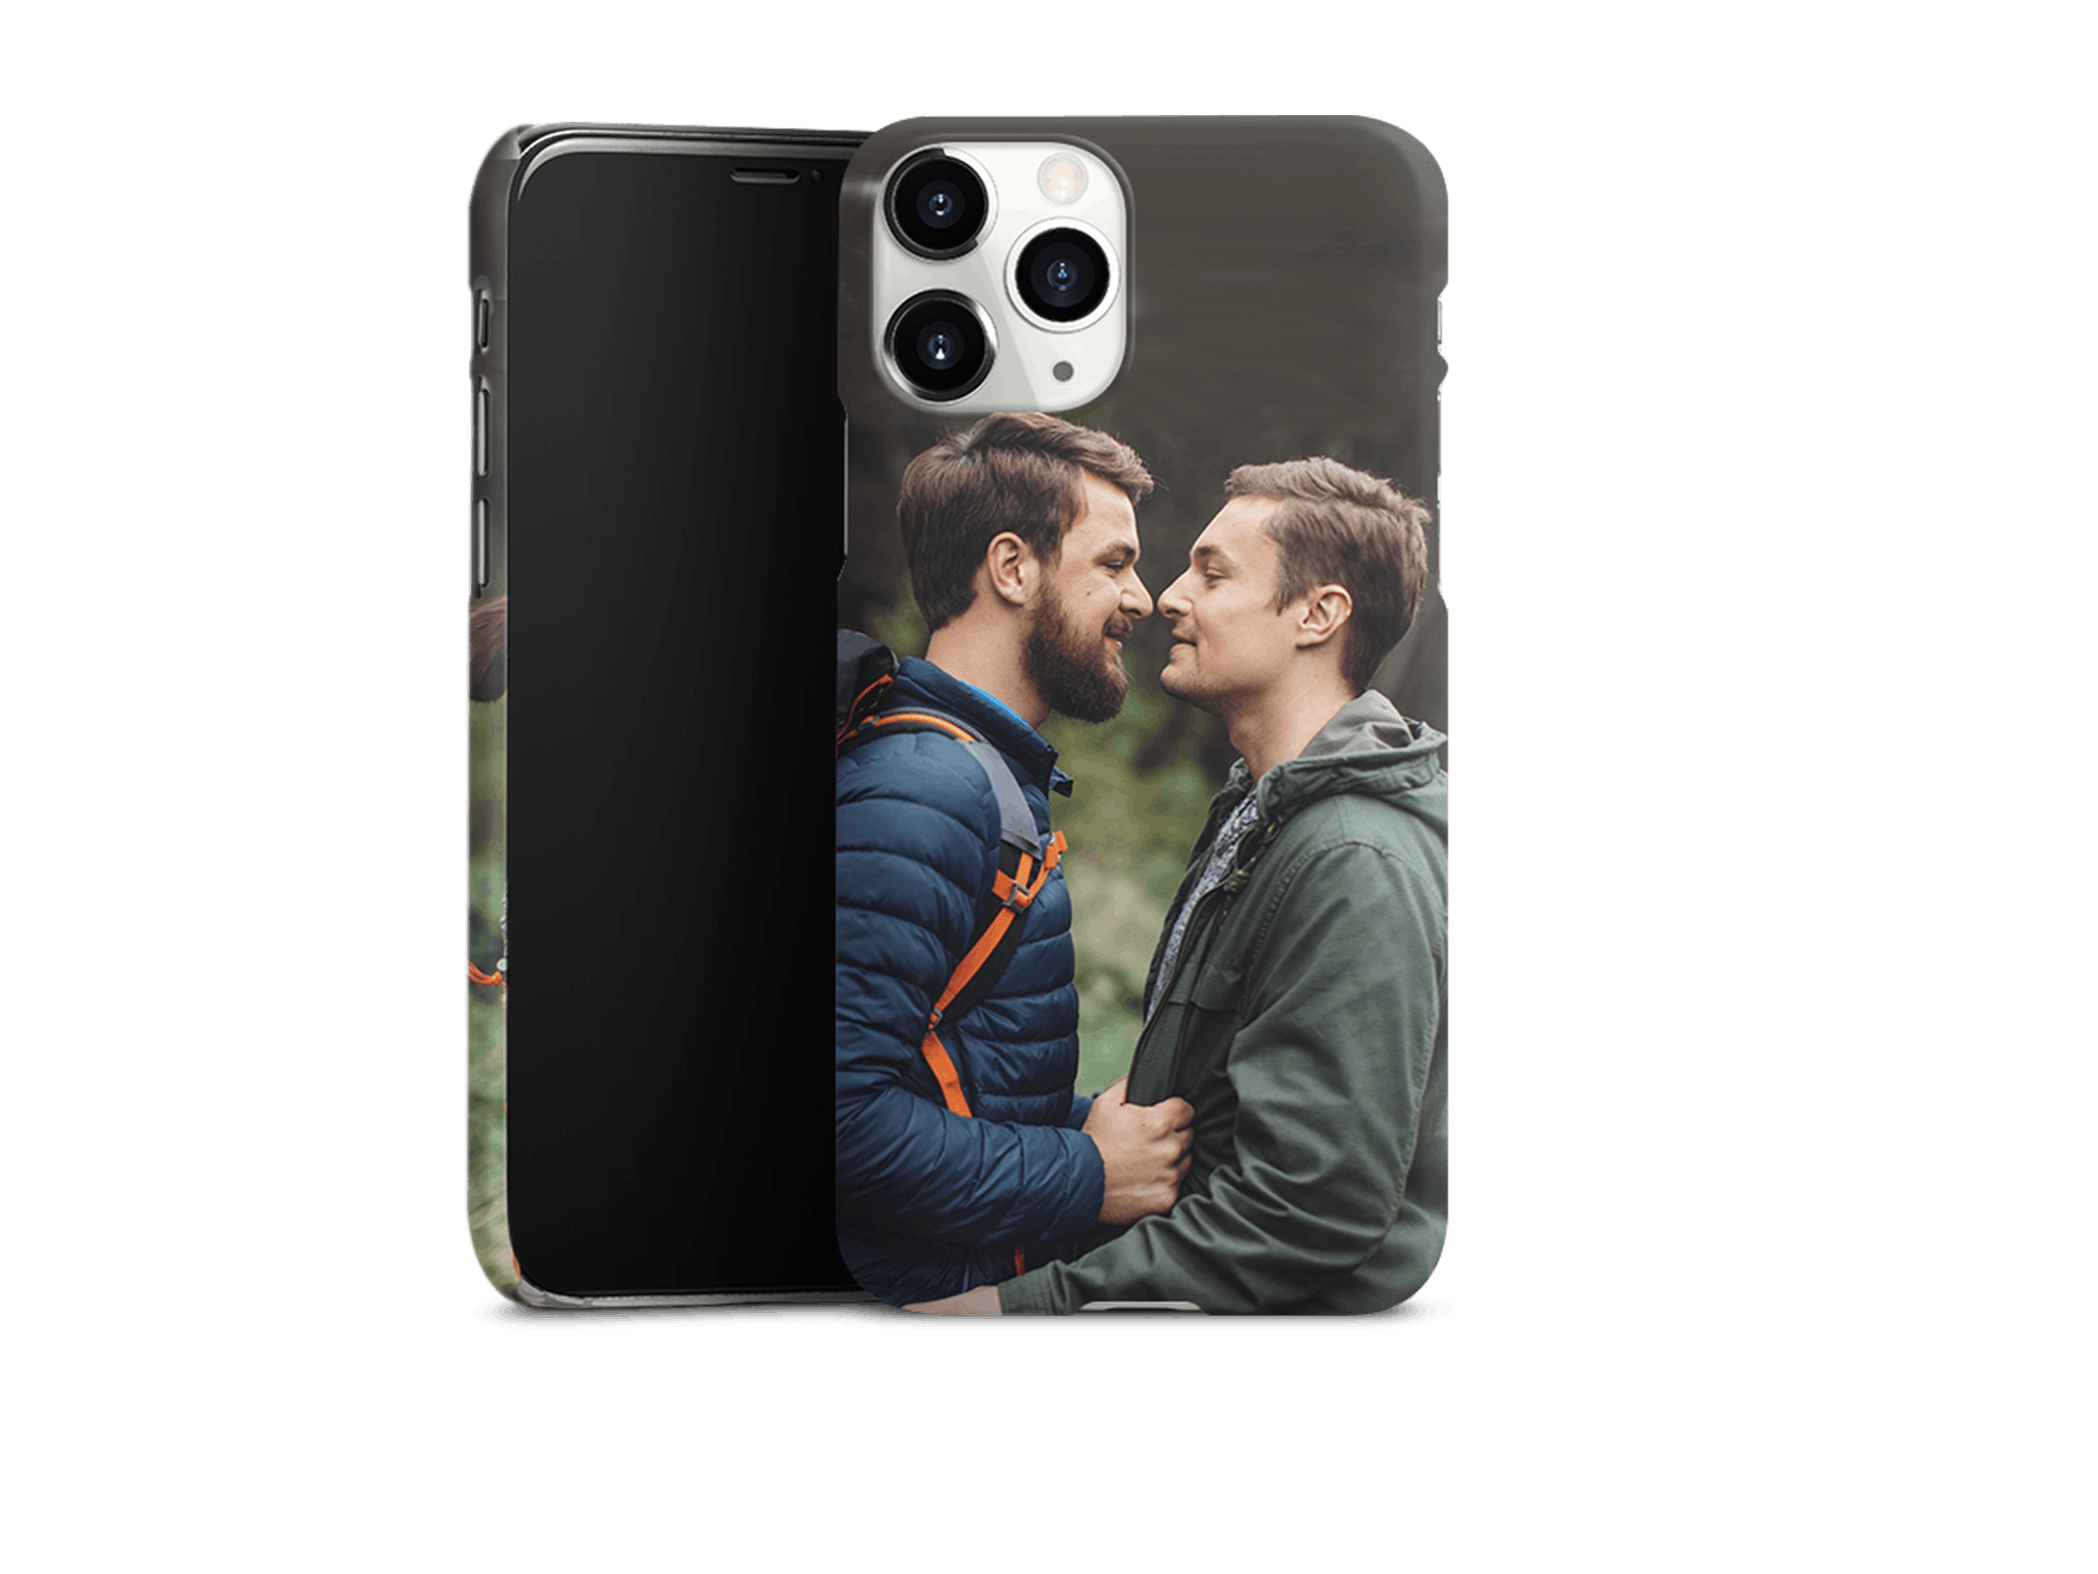 Premium-Case Handyhülle eines iPhones mit einem Foto eines gleichgeschlechtlichen Paares